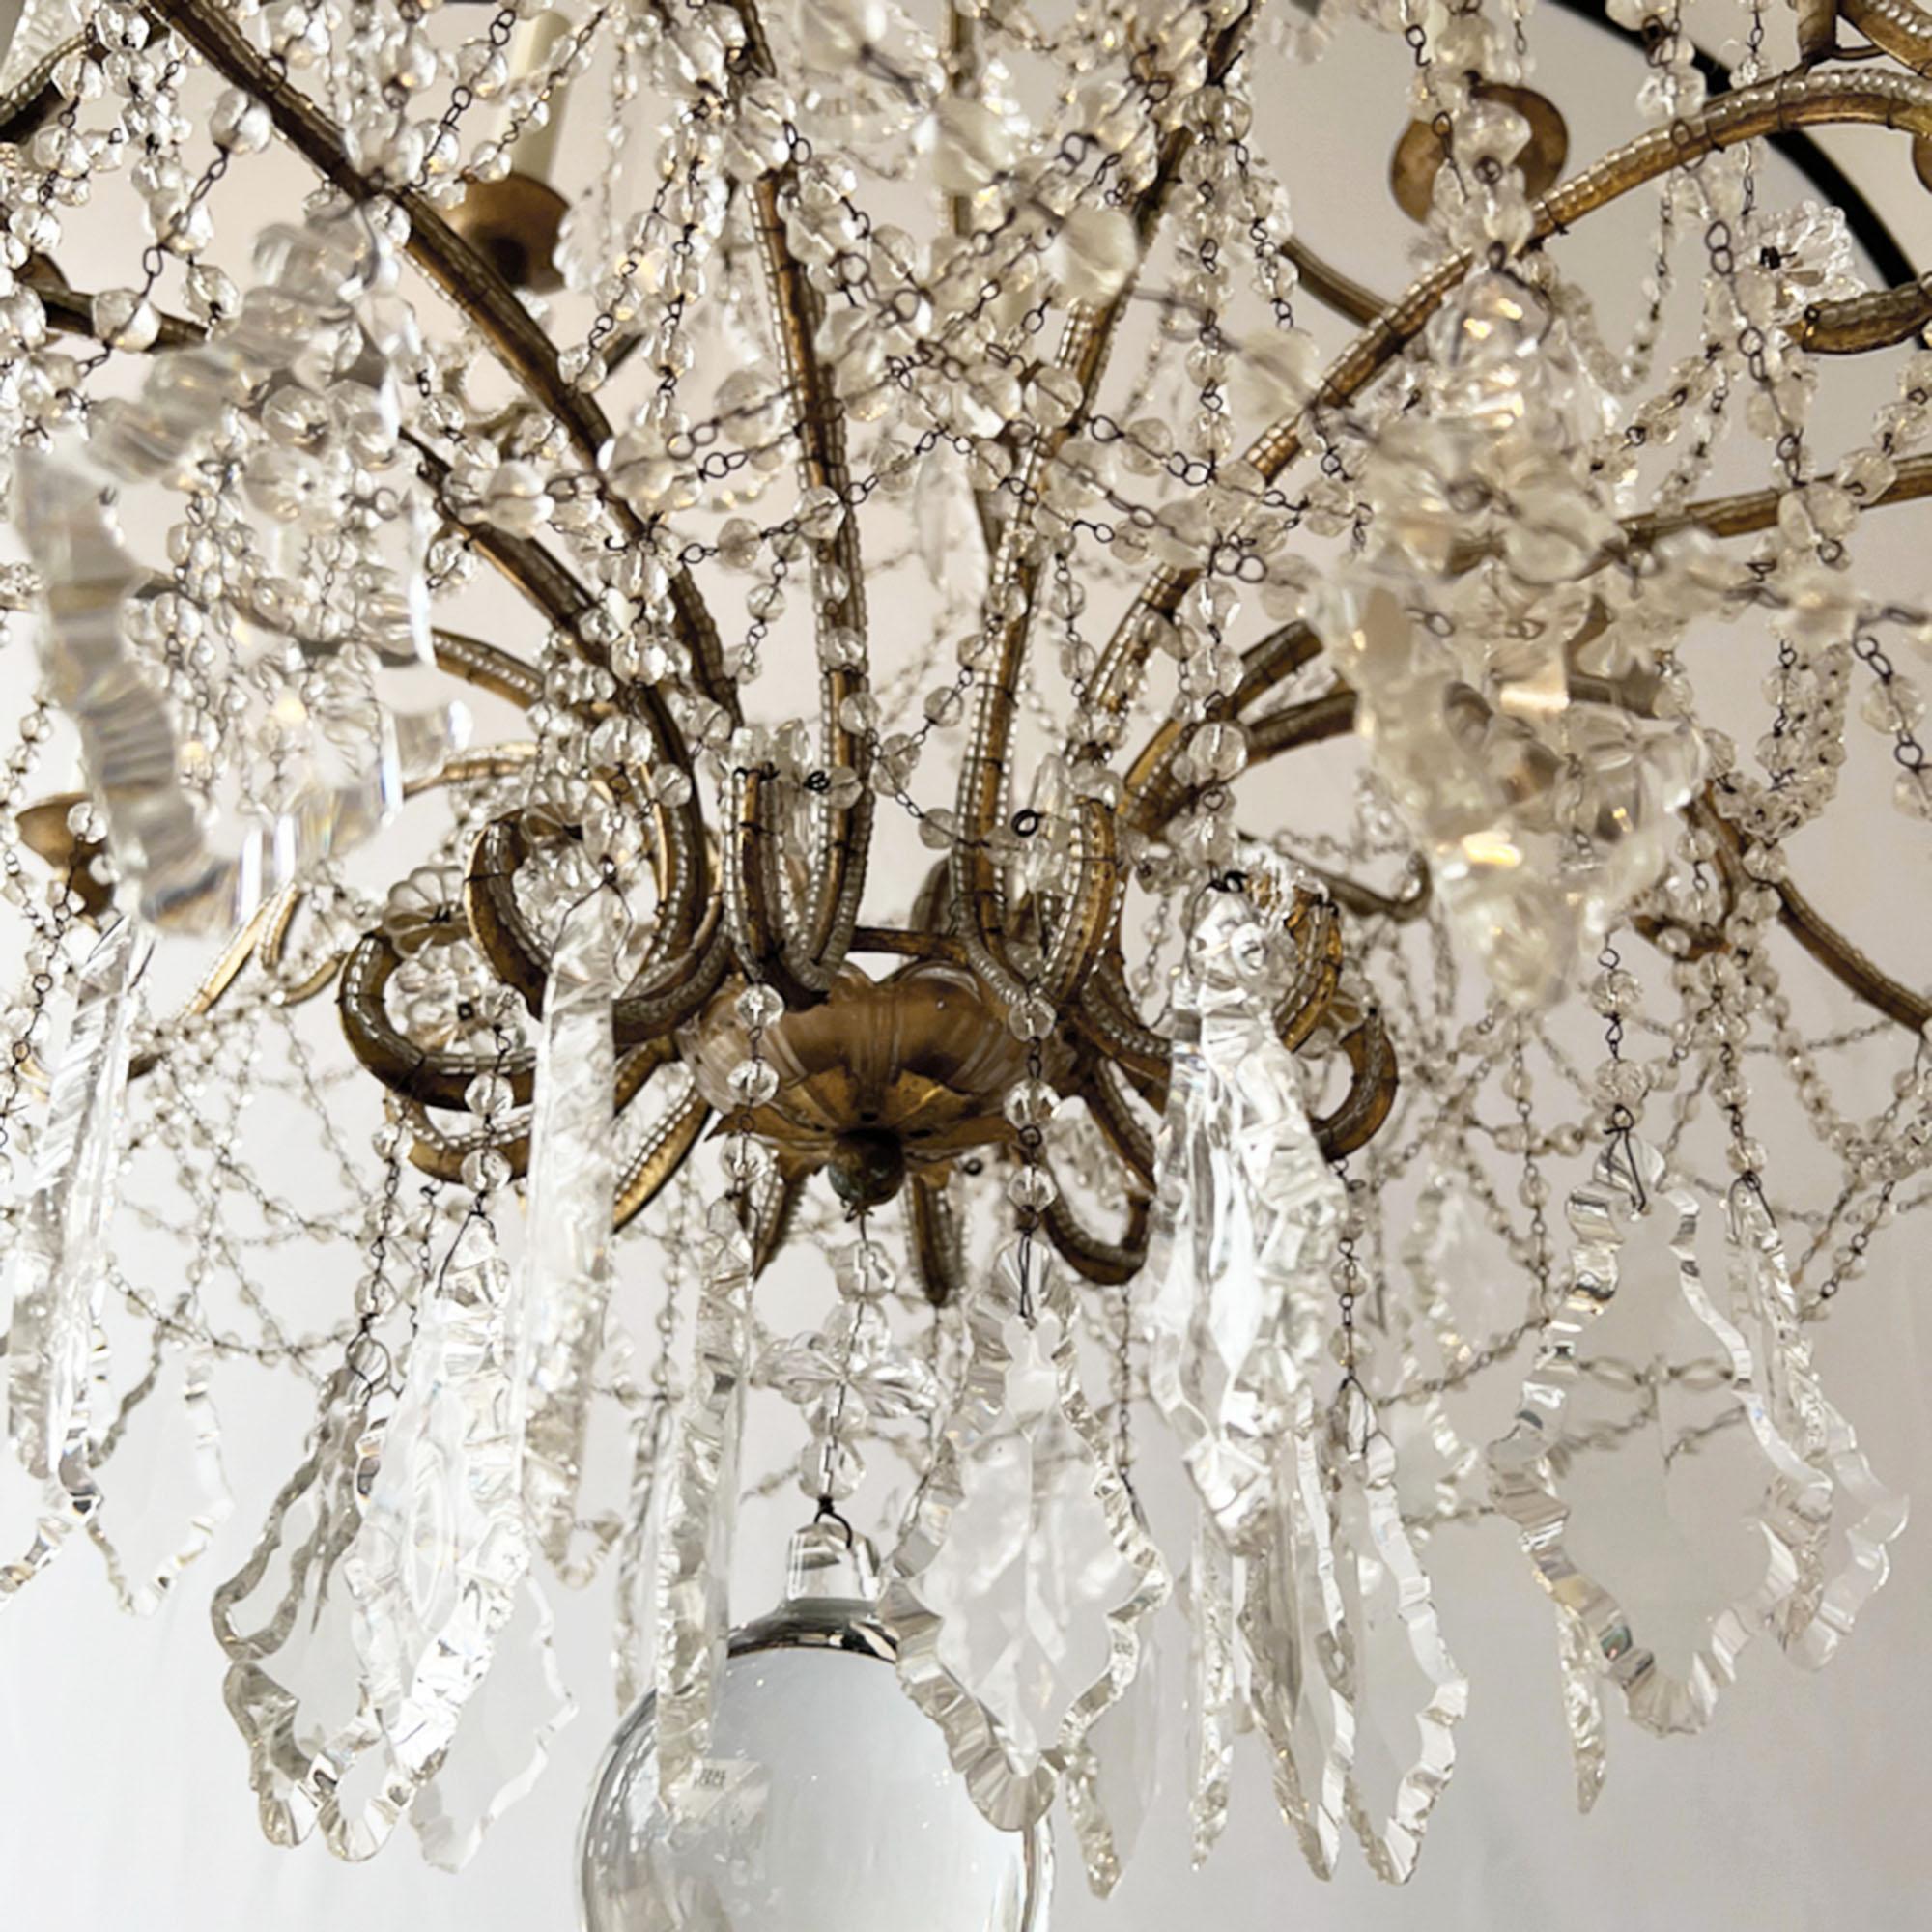 Un lustre perlé étonnant, fabriqué en Italie dans les années 1950.

Hautement décoratif et magnifiquement réalisé avec un cadre en métal doré. 

Grande échelle et magnifique !